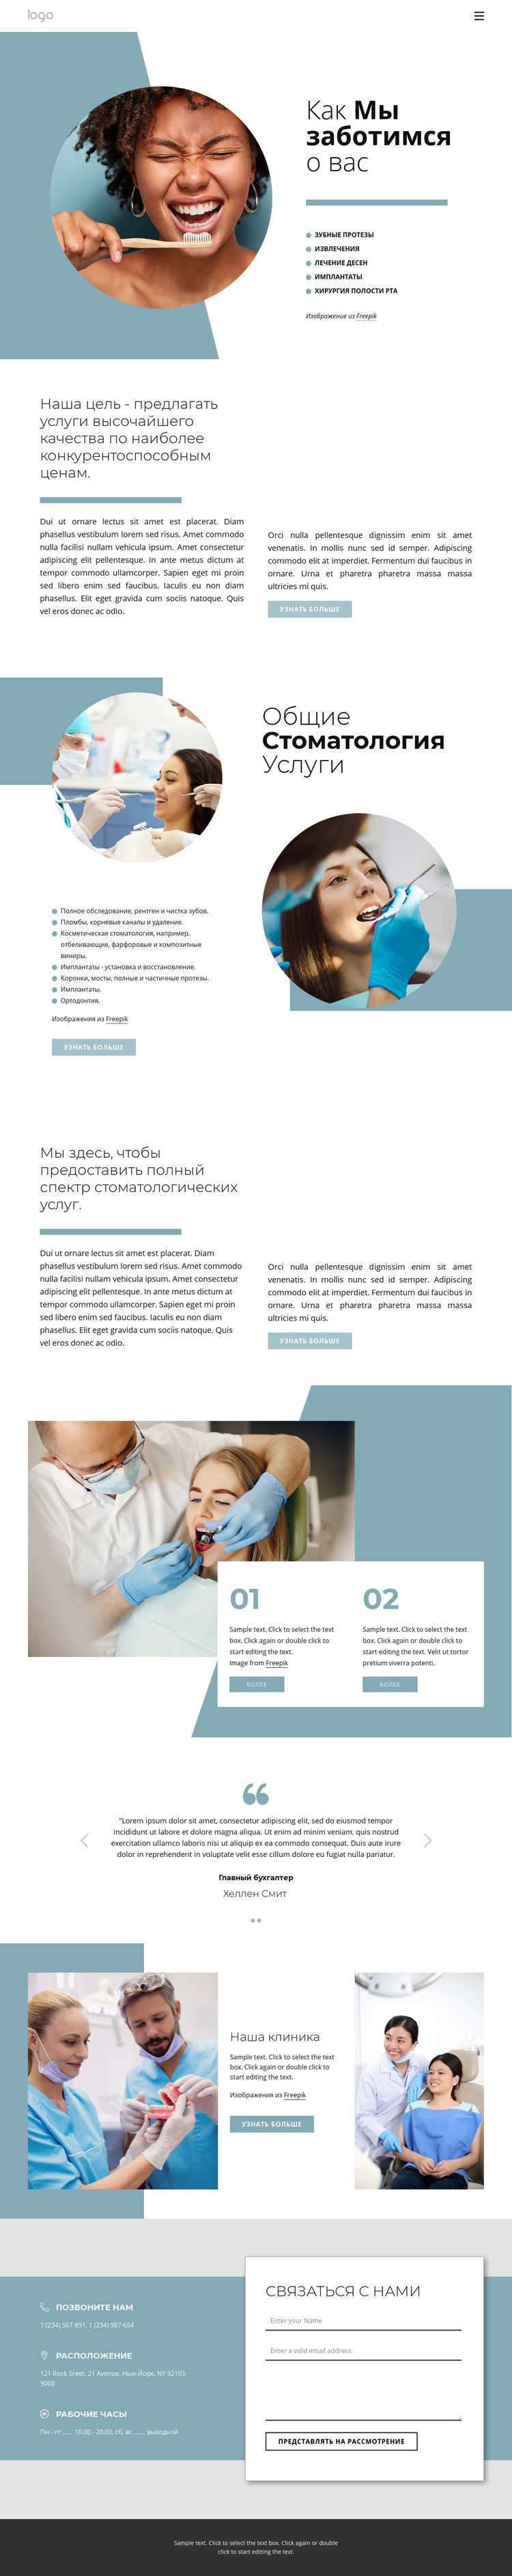 Качественные стоматологические услуги HTML шаблон